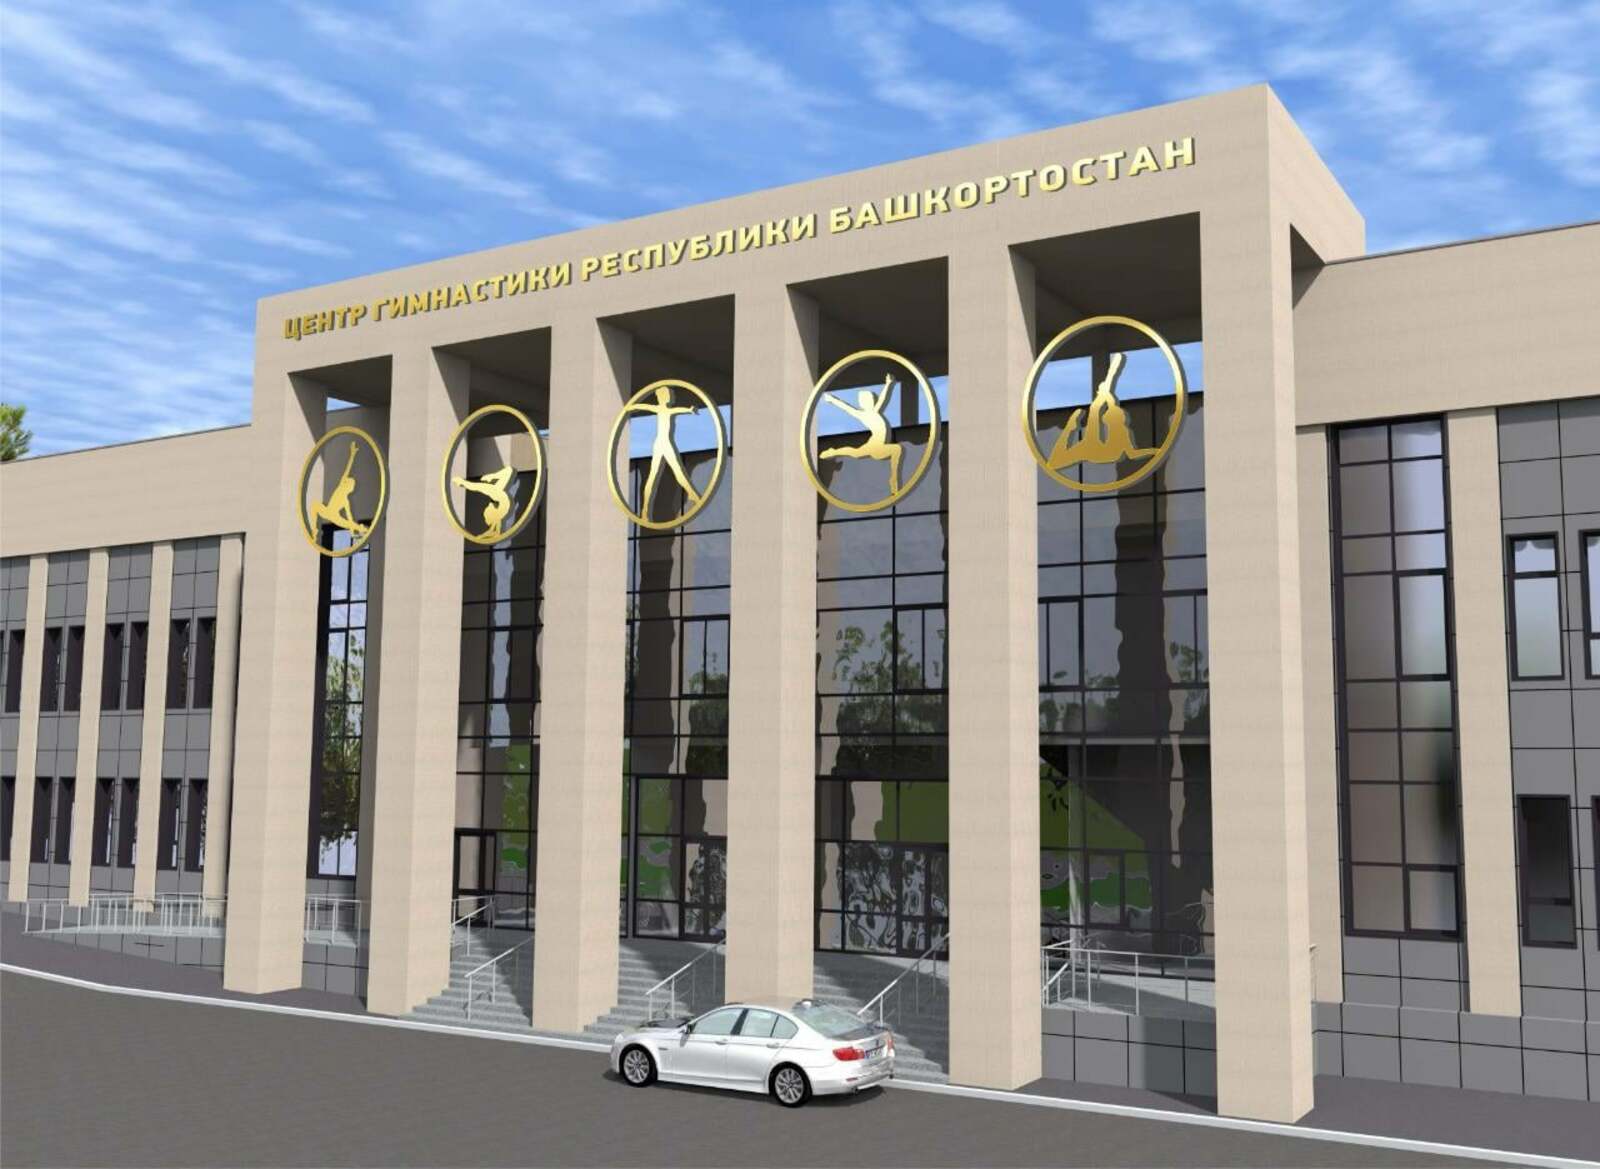 В Уфе совсем скоро откроется долгожданный Центр гимнастики Республики Башкортостана